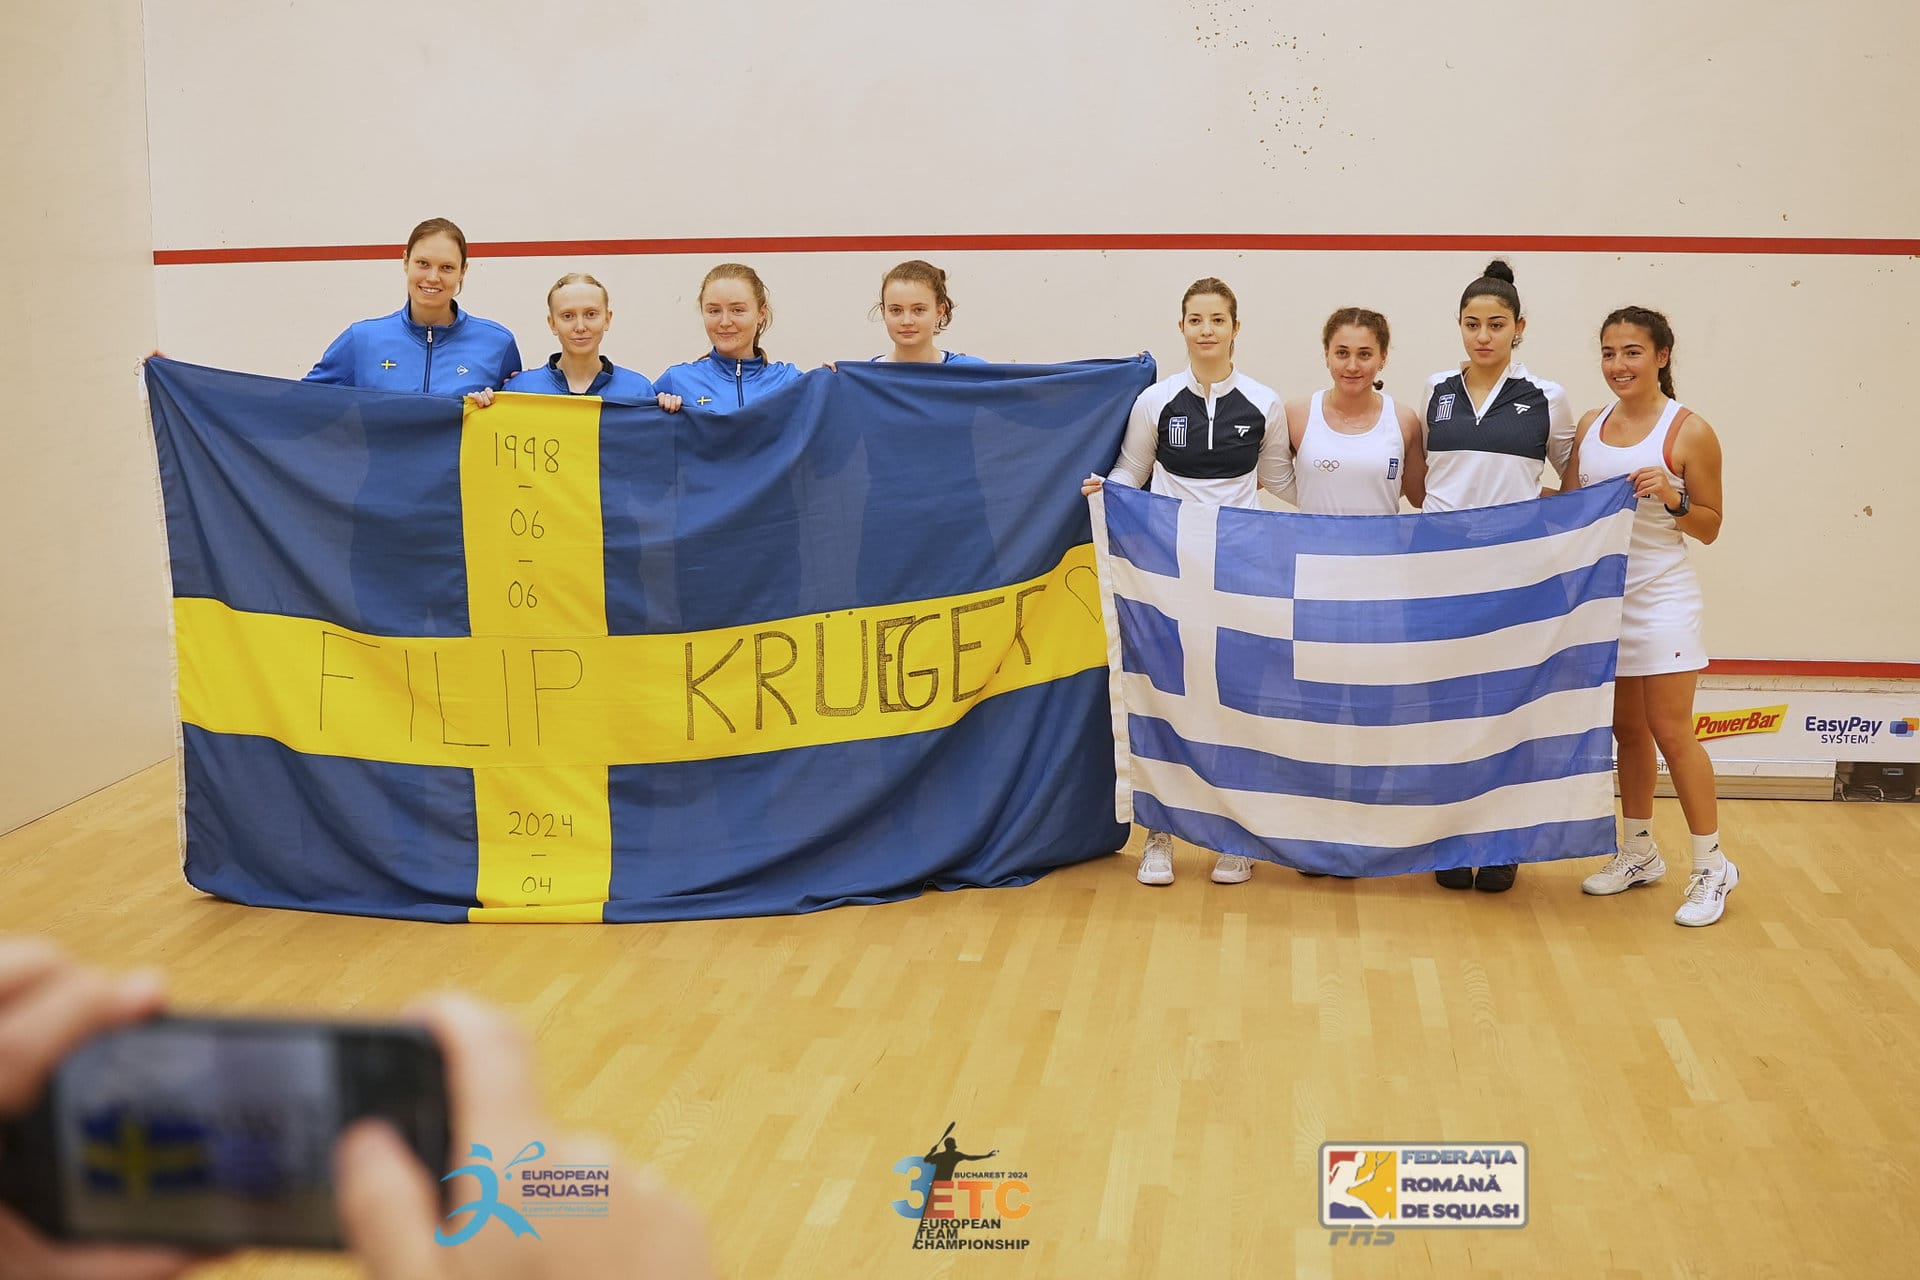 Sveriges Landslag möter Grekland i Squash EM division 3 2024 med en flagga som hedrar bortgångna Filip Krueger